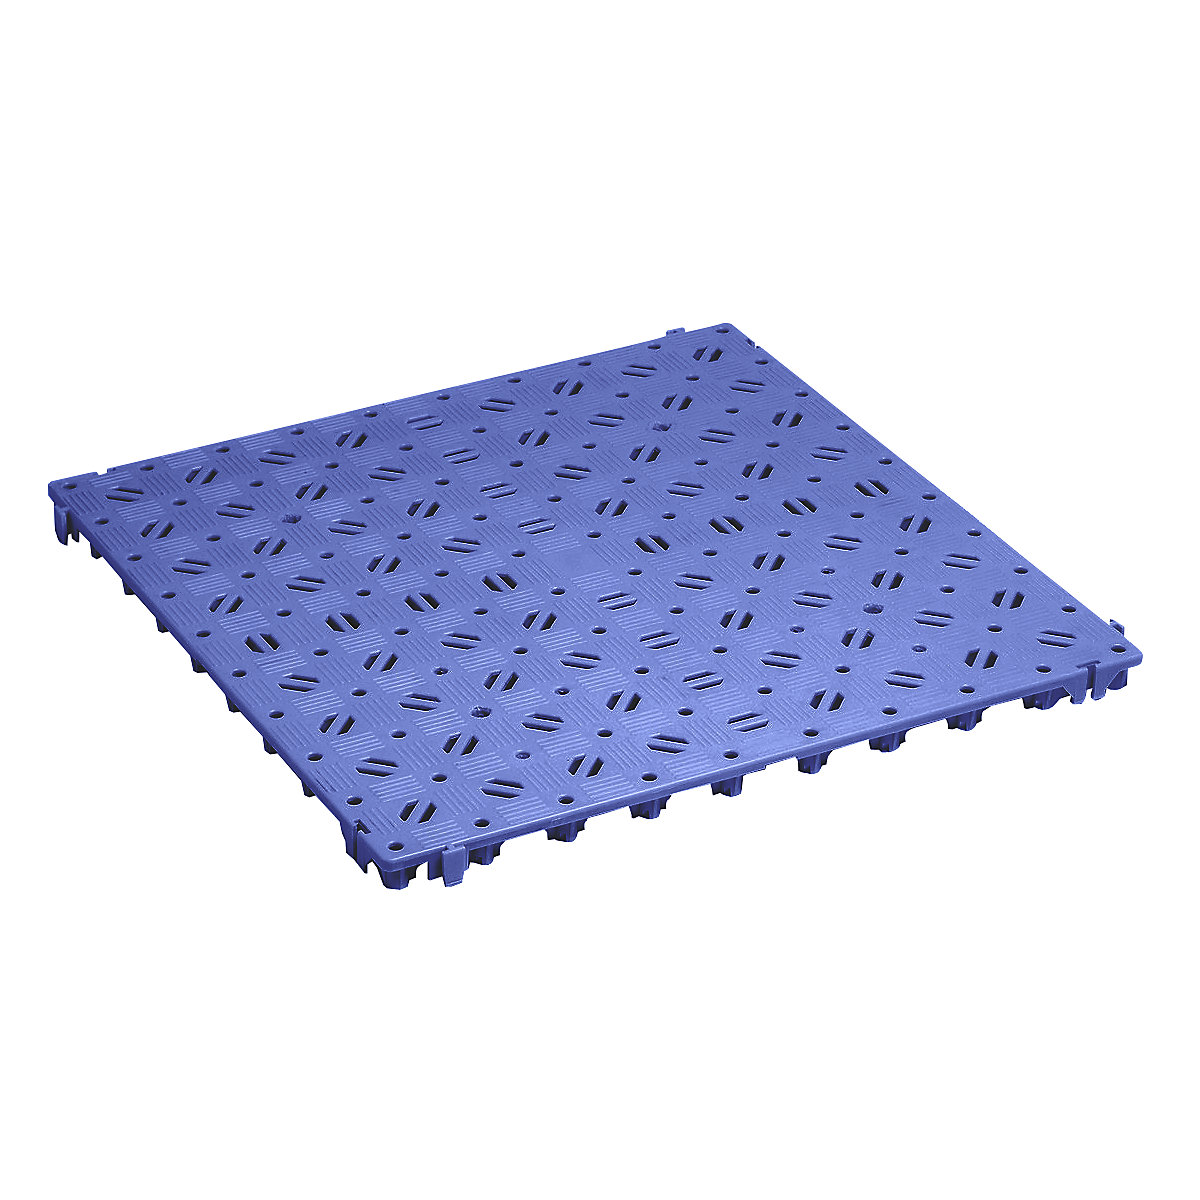 Plastic floor tile, polyethylene, 500 x 500 mm, stable, pack of 20, blue